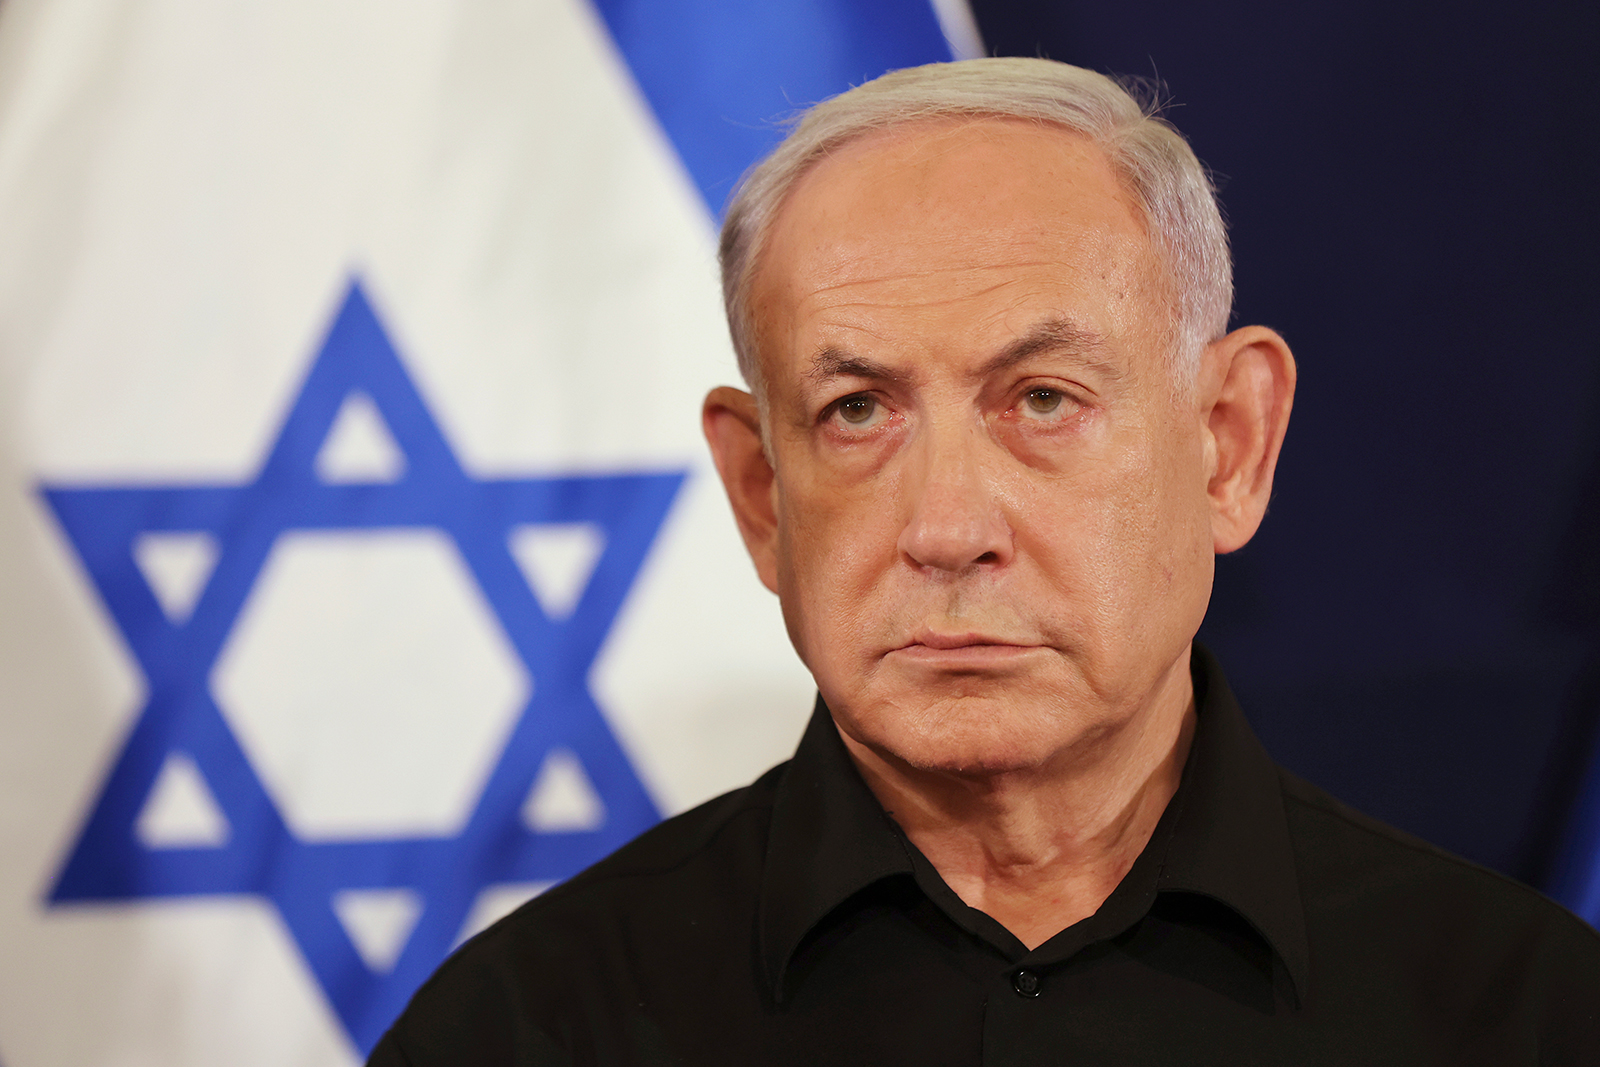 Benjamin Netanyahu attends a press conference in Tel Aviv, Israel on October 28.